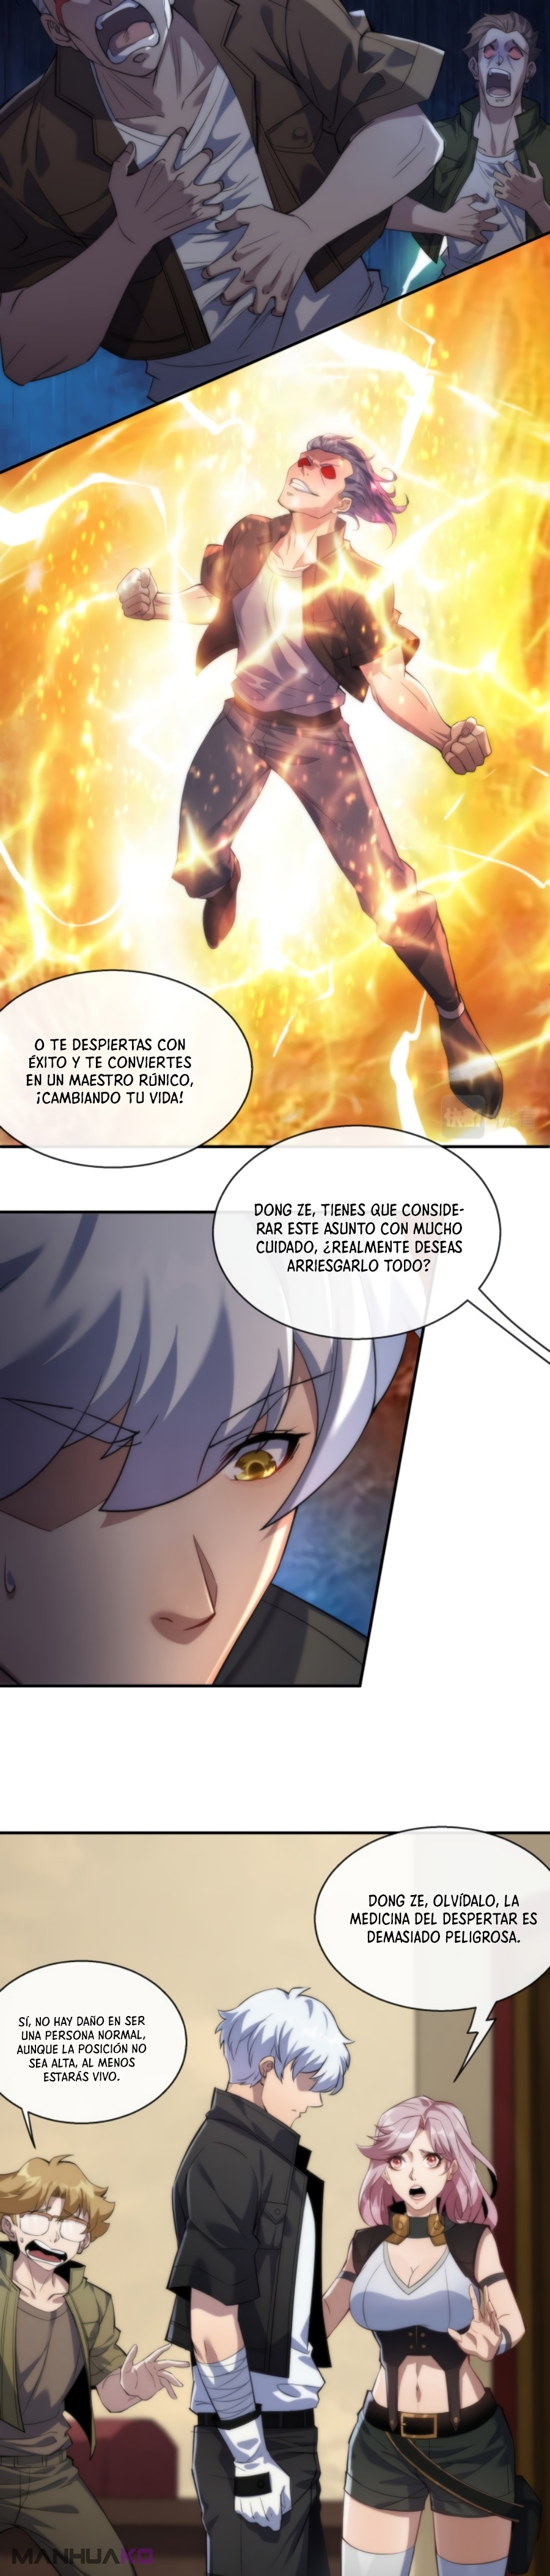 Manga Rey de las runas Chapter 11 image number 16